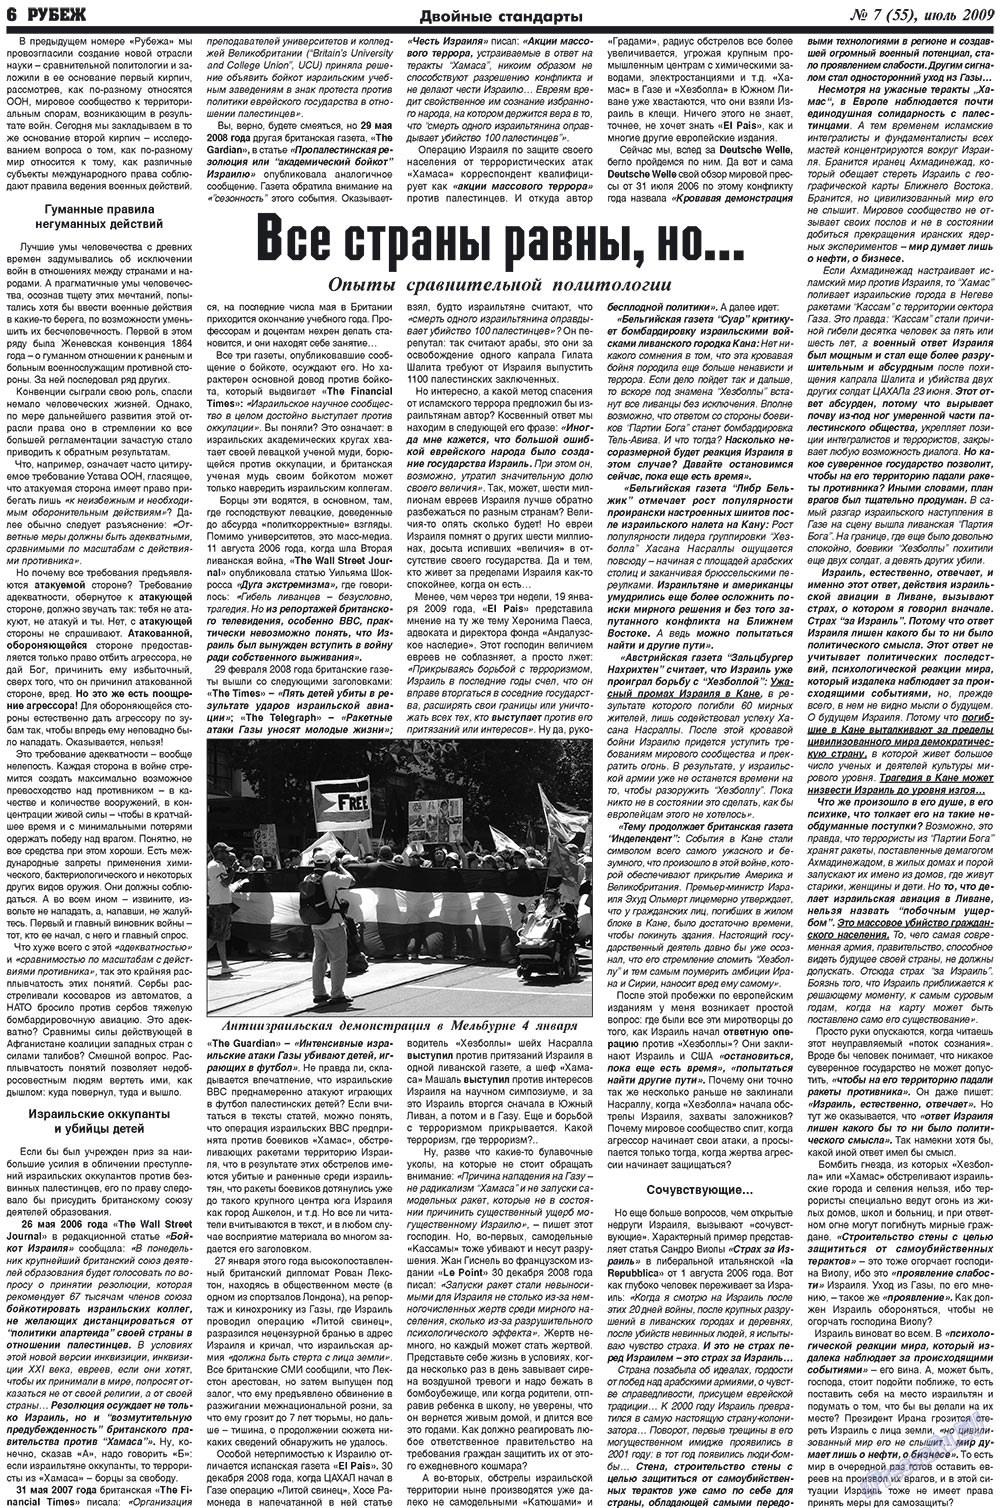 Рубеж (газета). 2009 год, номер 7, стр. 6